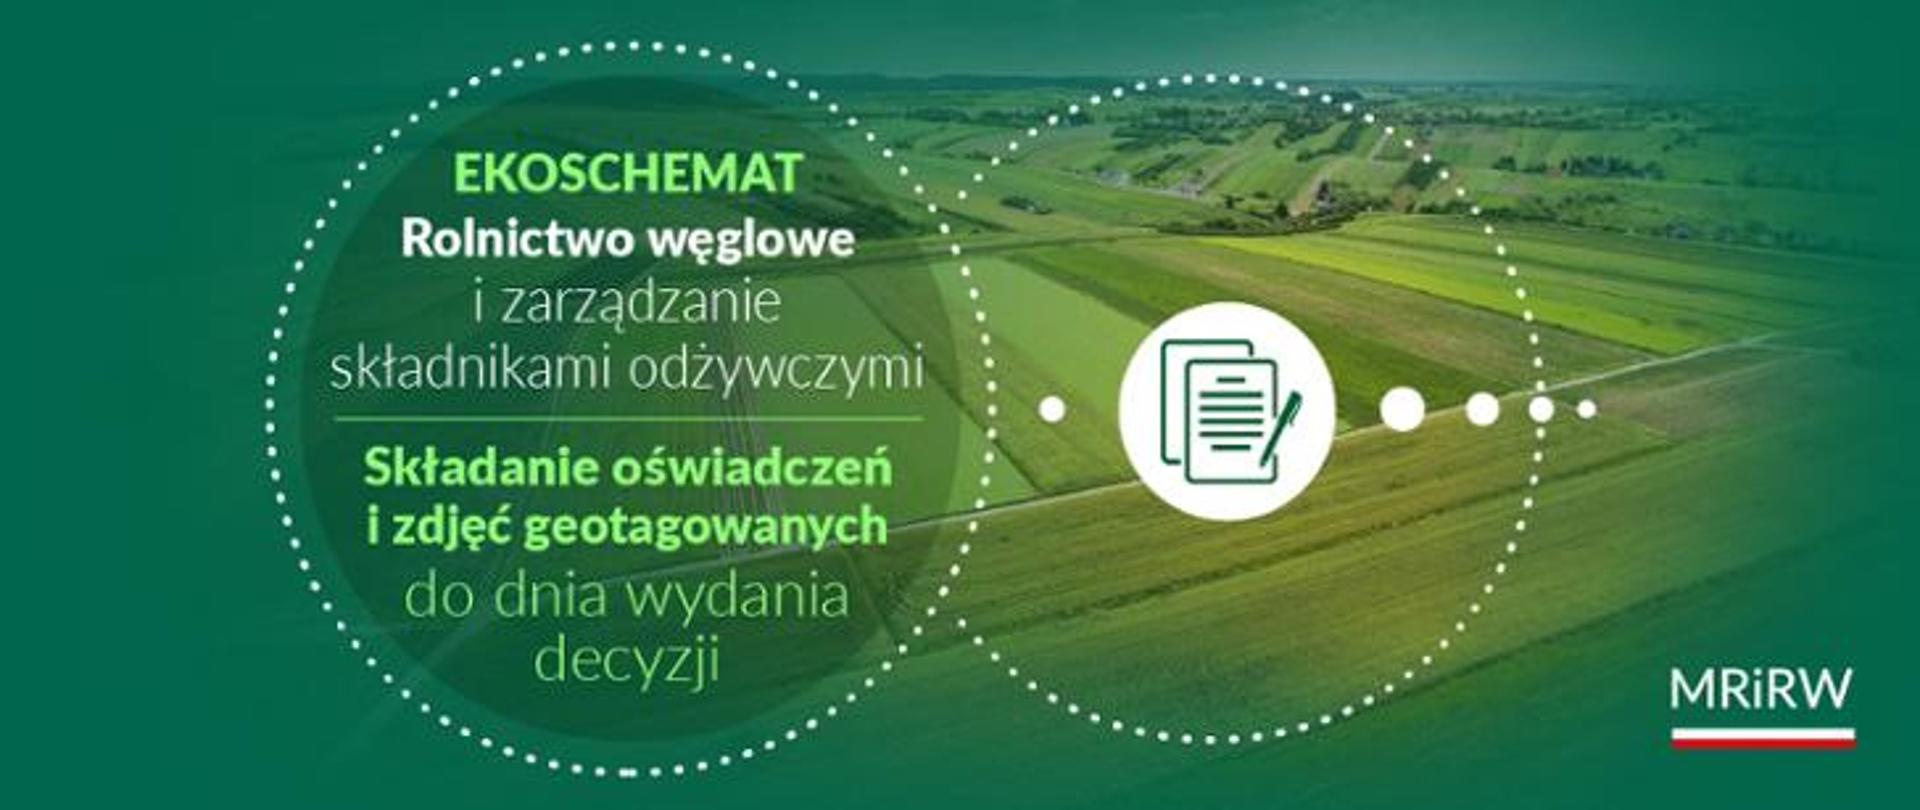 MRiRW informuje_ekoschemat Rolnictwo węglowe_04_03_2024